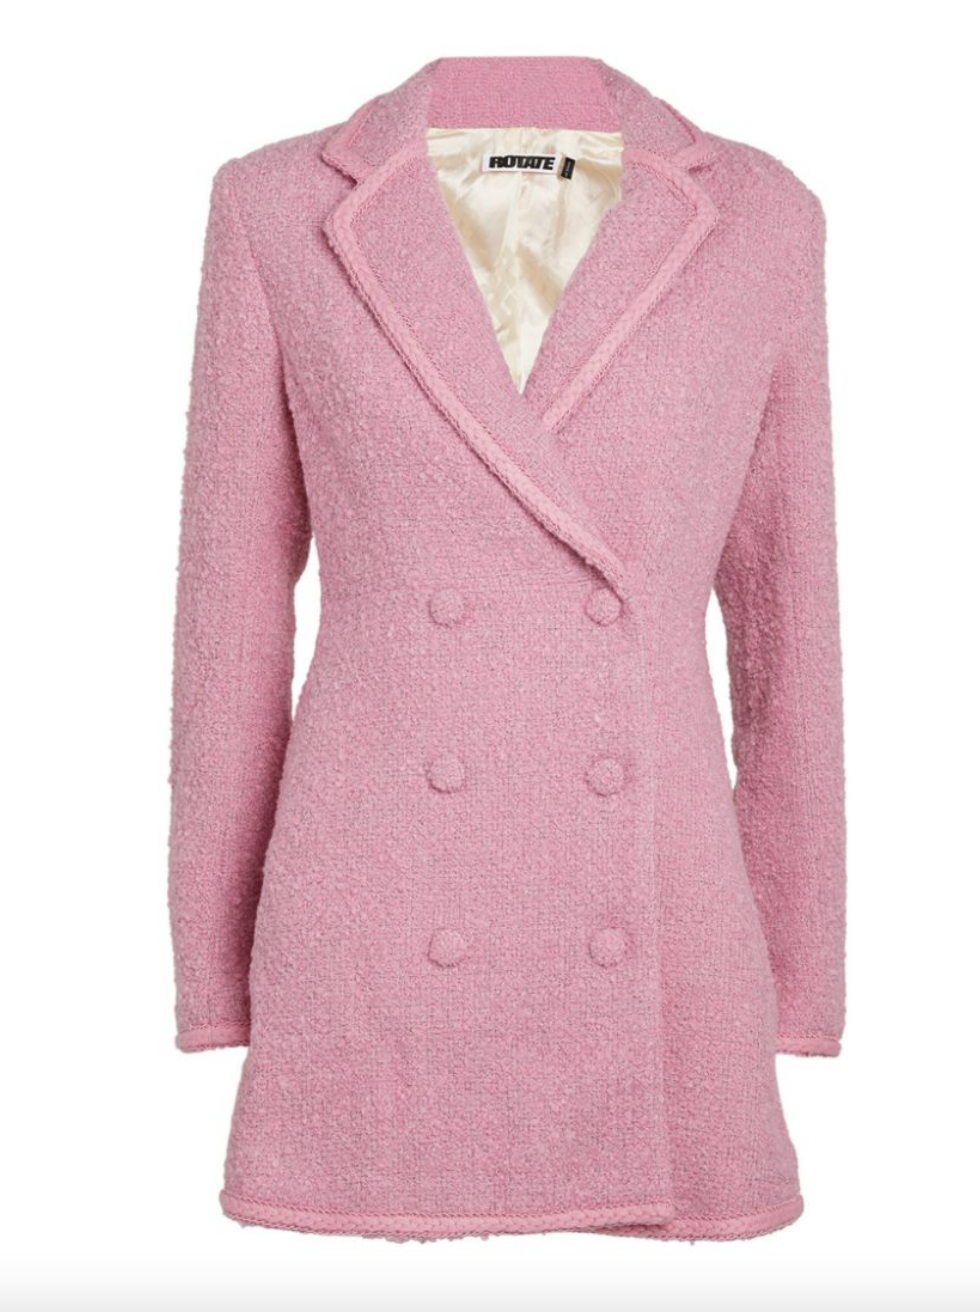 Erika Girardi's Pink Blazer Dress